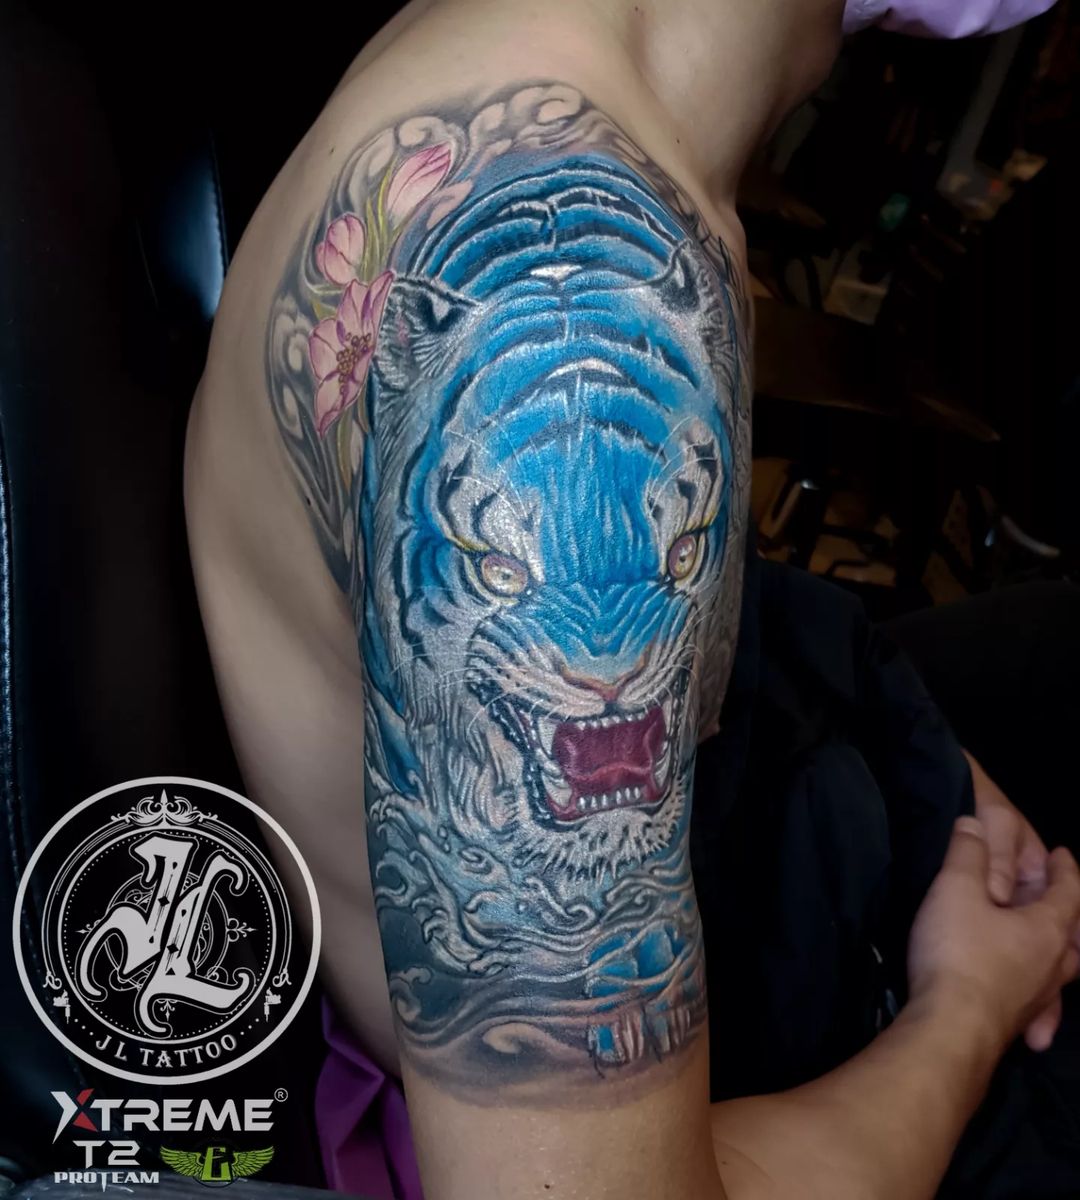 Tiger tattoos on shoulder